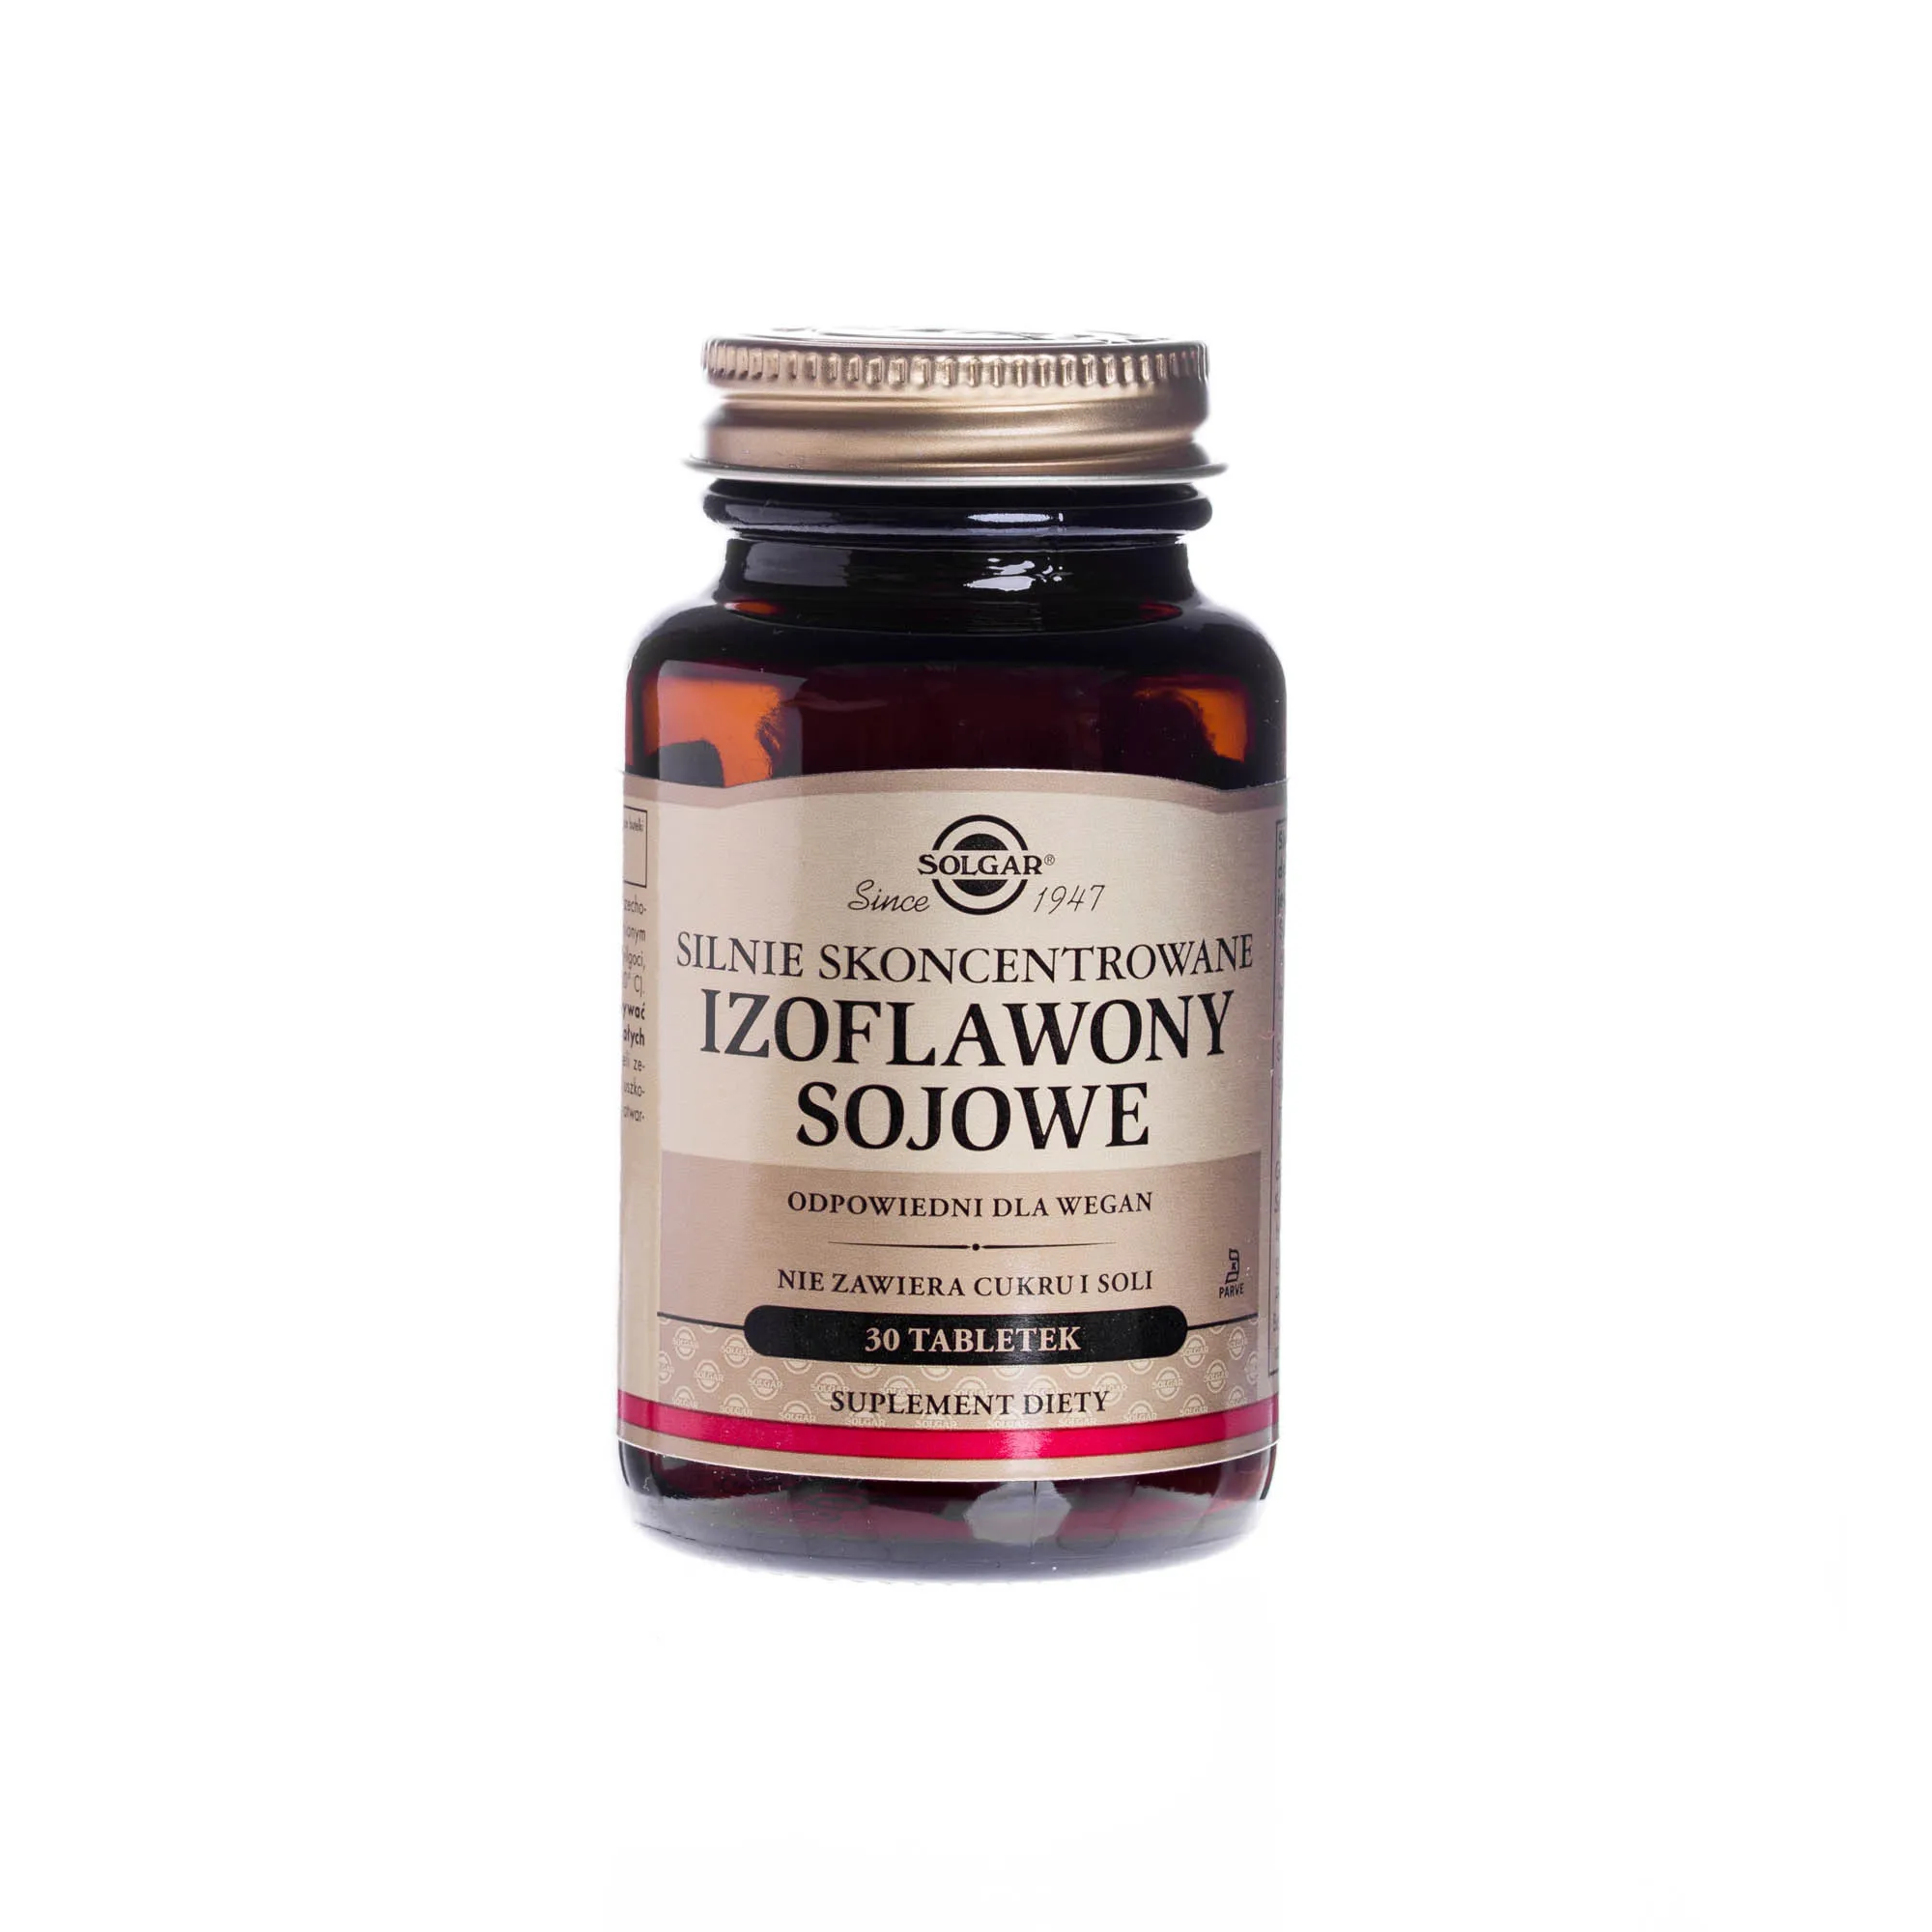 Solgar Silnie Skoncentrowane Izoflawony sojowe suplement diety, 30 tabletek 